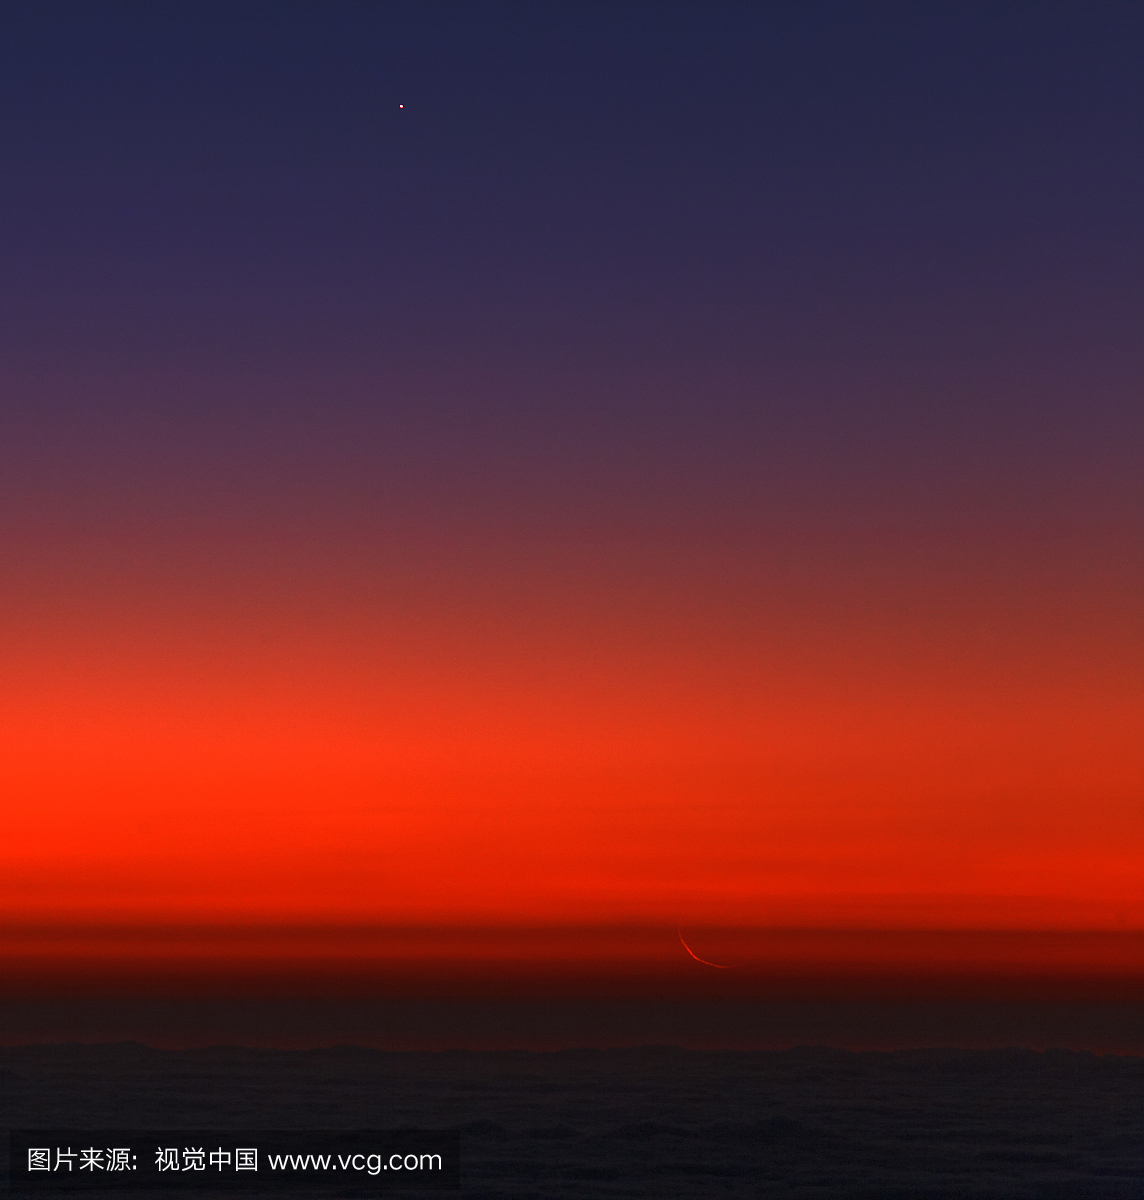 行星水星和薄月牙在早晨的天空中结合起来。从